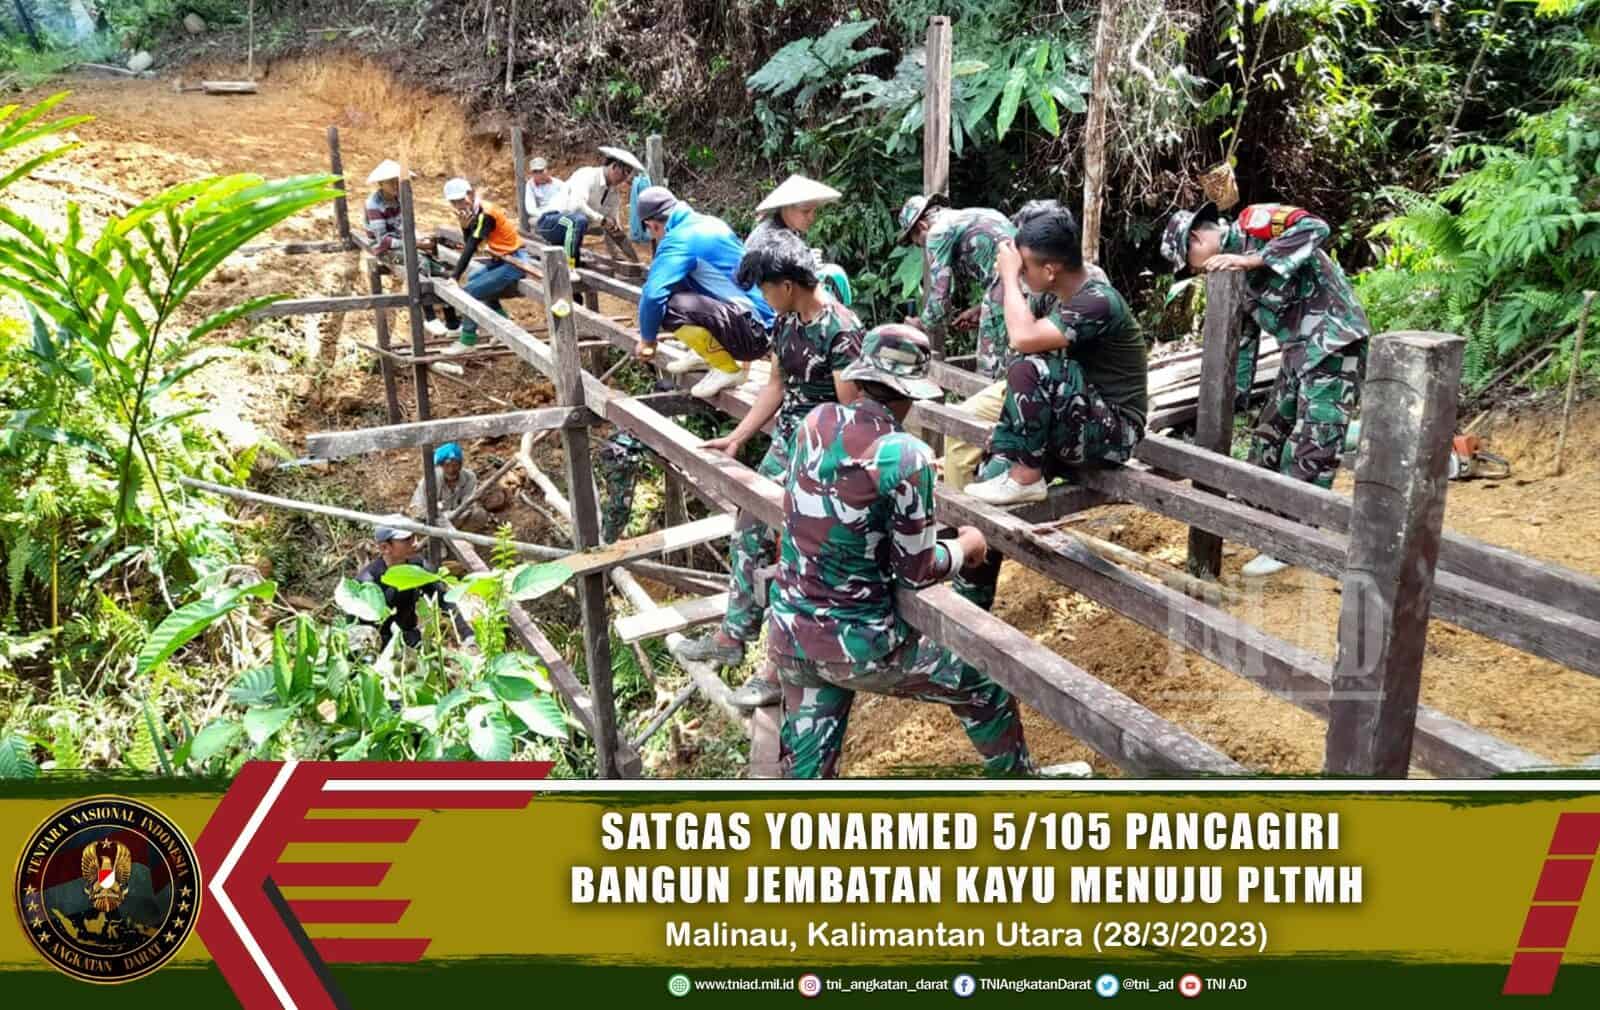 Pembuatan Jembatan Kayu Menuju Ke PLTMH Oleh Satgas Pamtas Yon Armed 5/PG Bersama Warga Desa Long Jelet